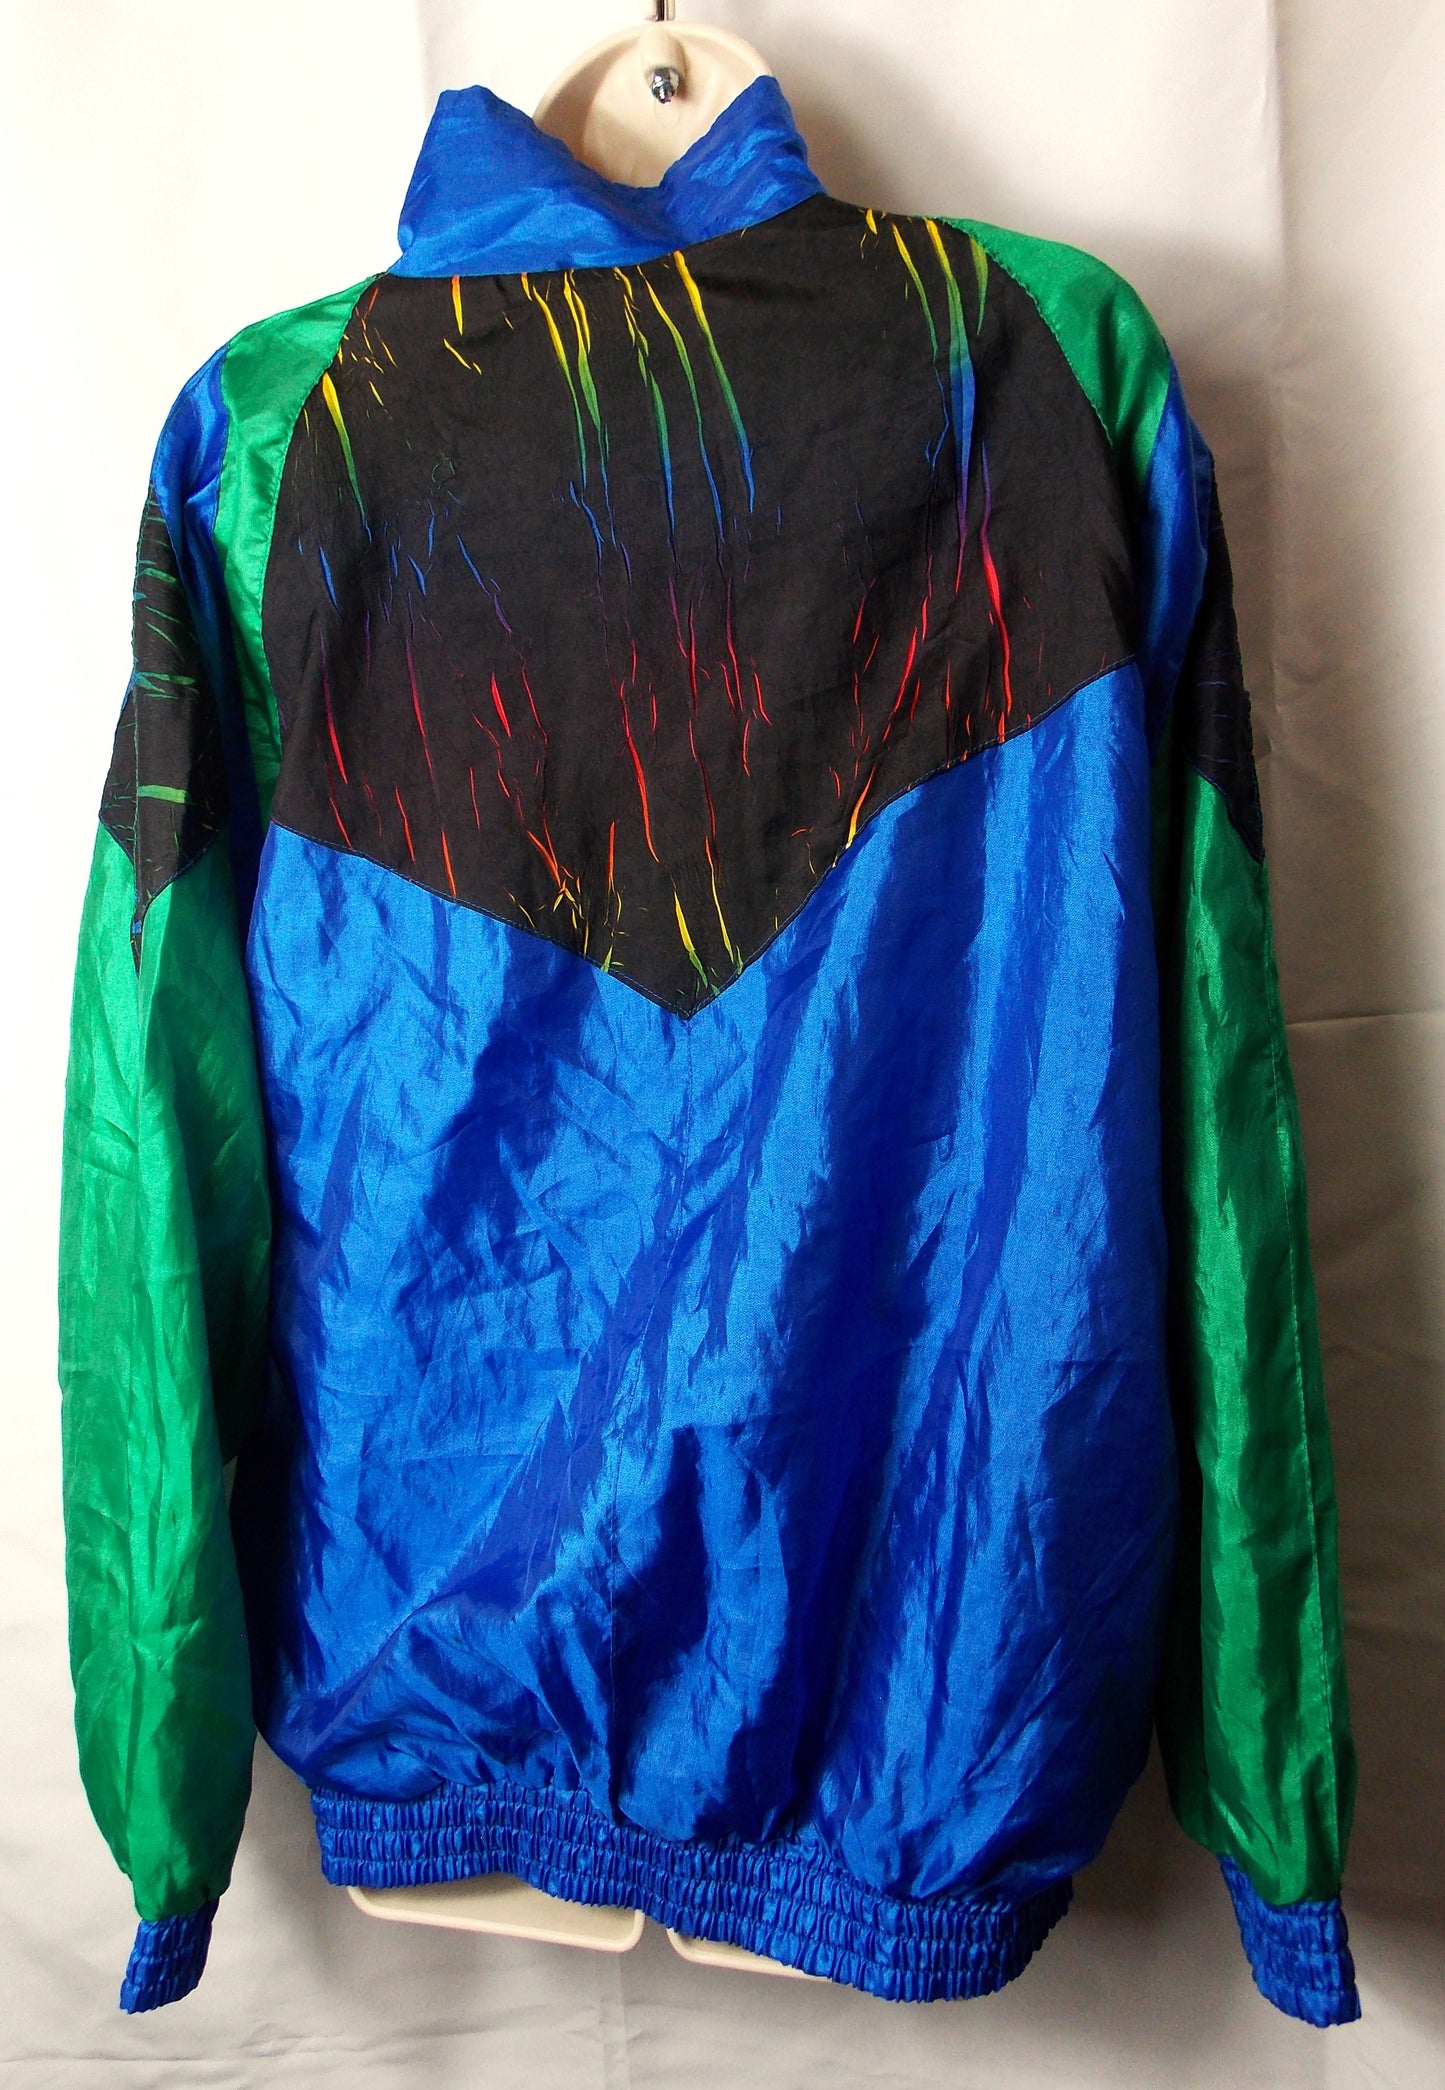 1980's Shell jacket.